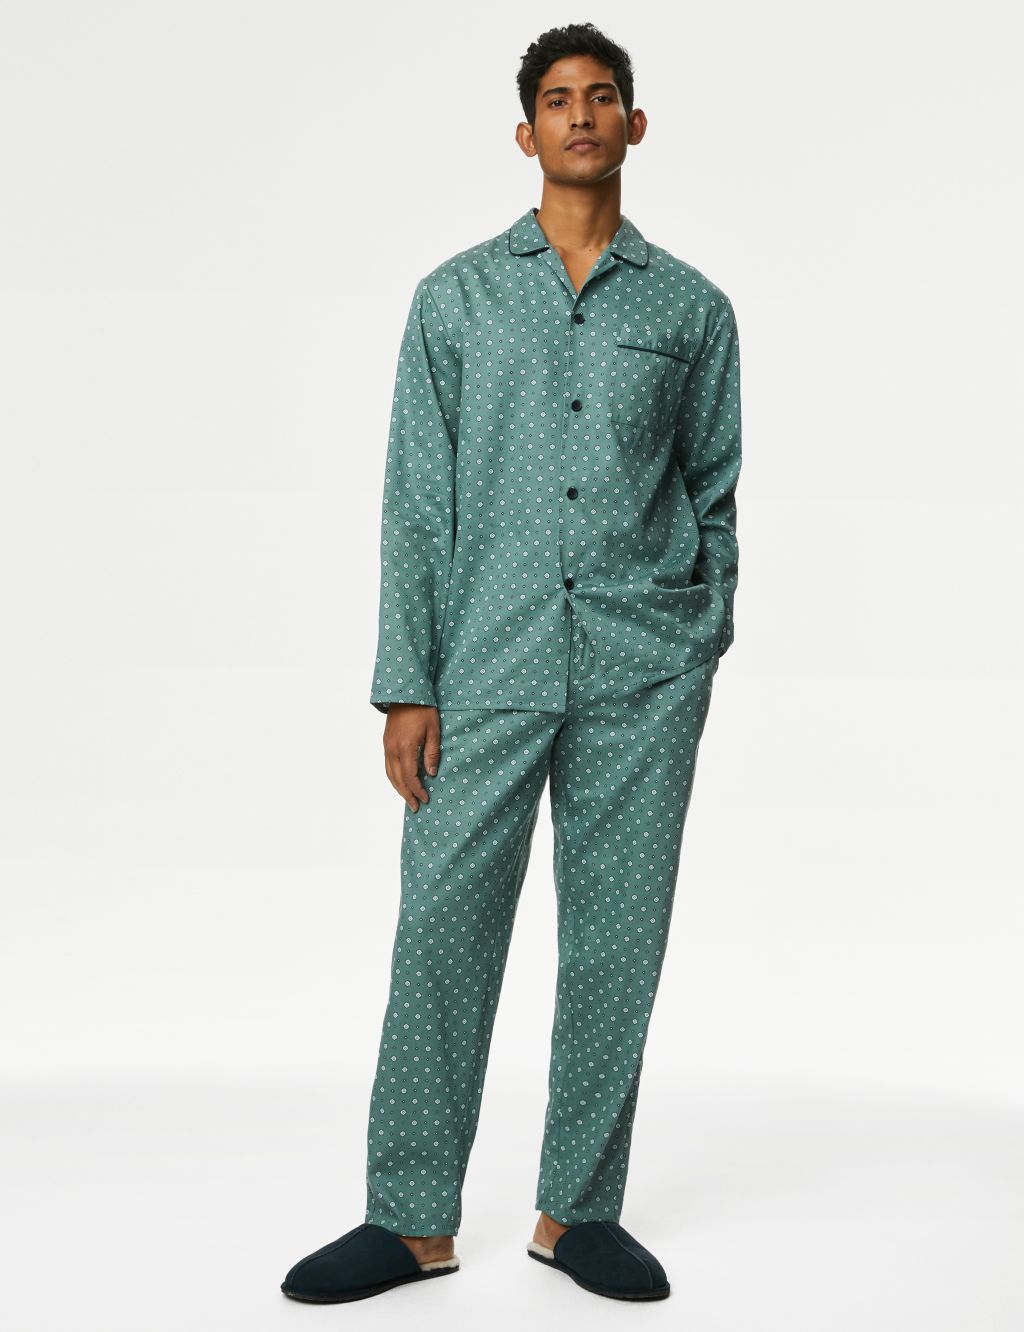 Men's pyjama set for €32.99 - Pajamas - Hunkemöller